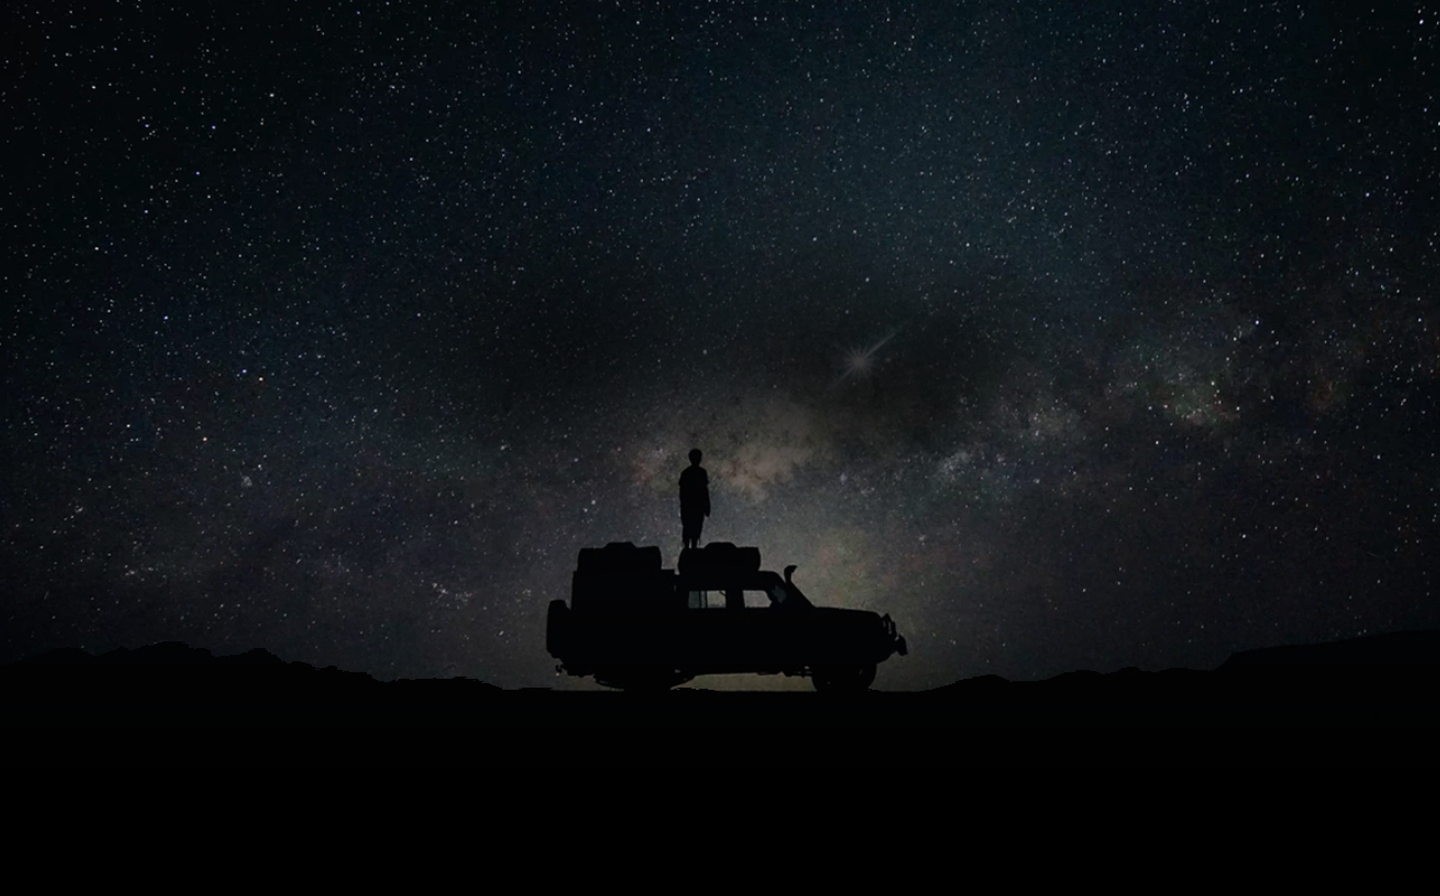 별빛이 장관을 이루는 밤 하늘을 배경으로 한 사람이 차 위에 서서 하늘을 바라보고 있습니다. 배경에는  '5G 히스토리'라는 텍스트와 '3G 기술부터 초고속 5G 시대까지'라는 텍스트가 위아래로 나란히 적혀 있습니다.